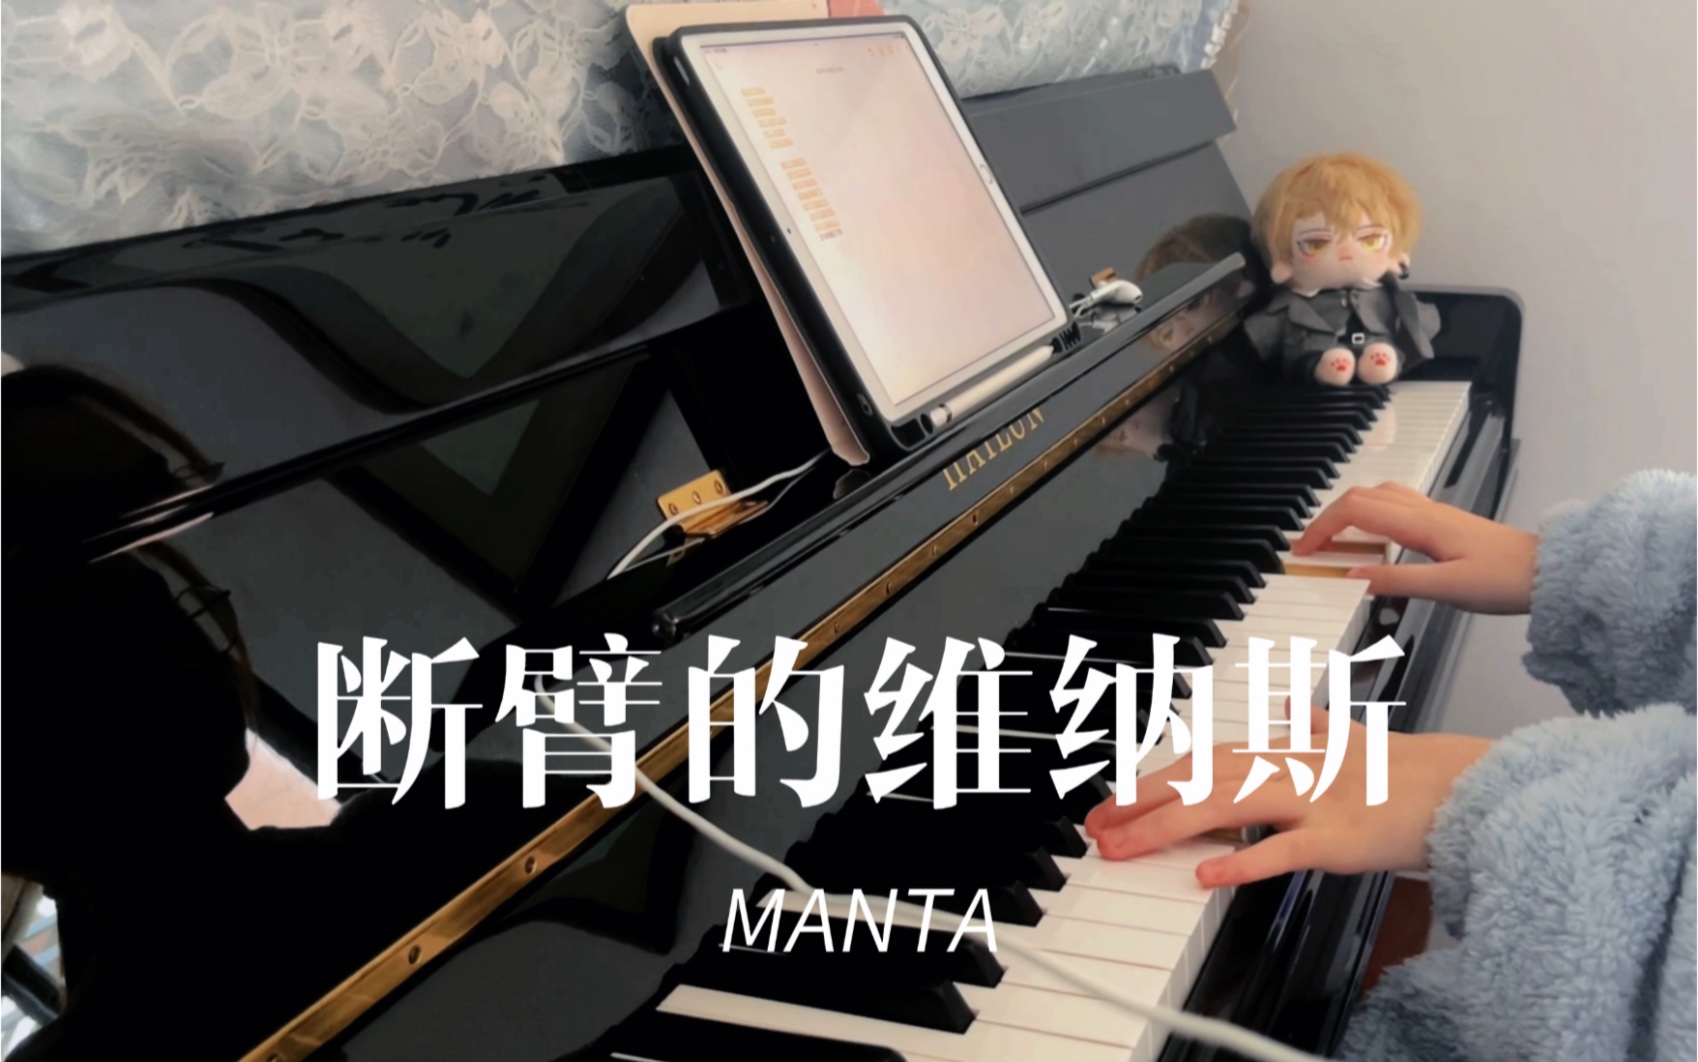 [图]MANTA新歌《断臂的维纳斯》｜钢琴速翻｜“而我的不完美与我最适配。”